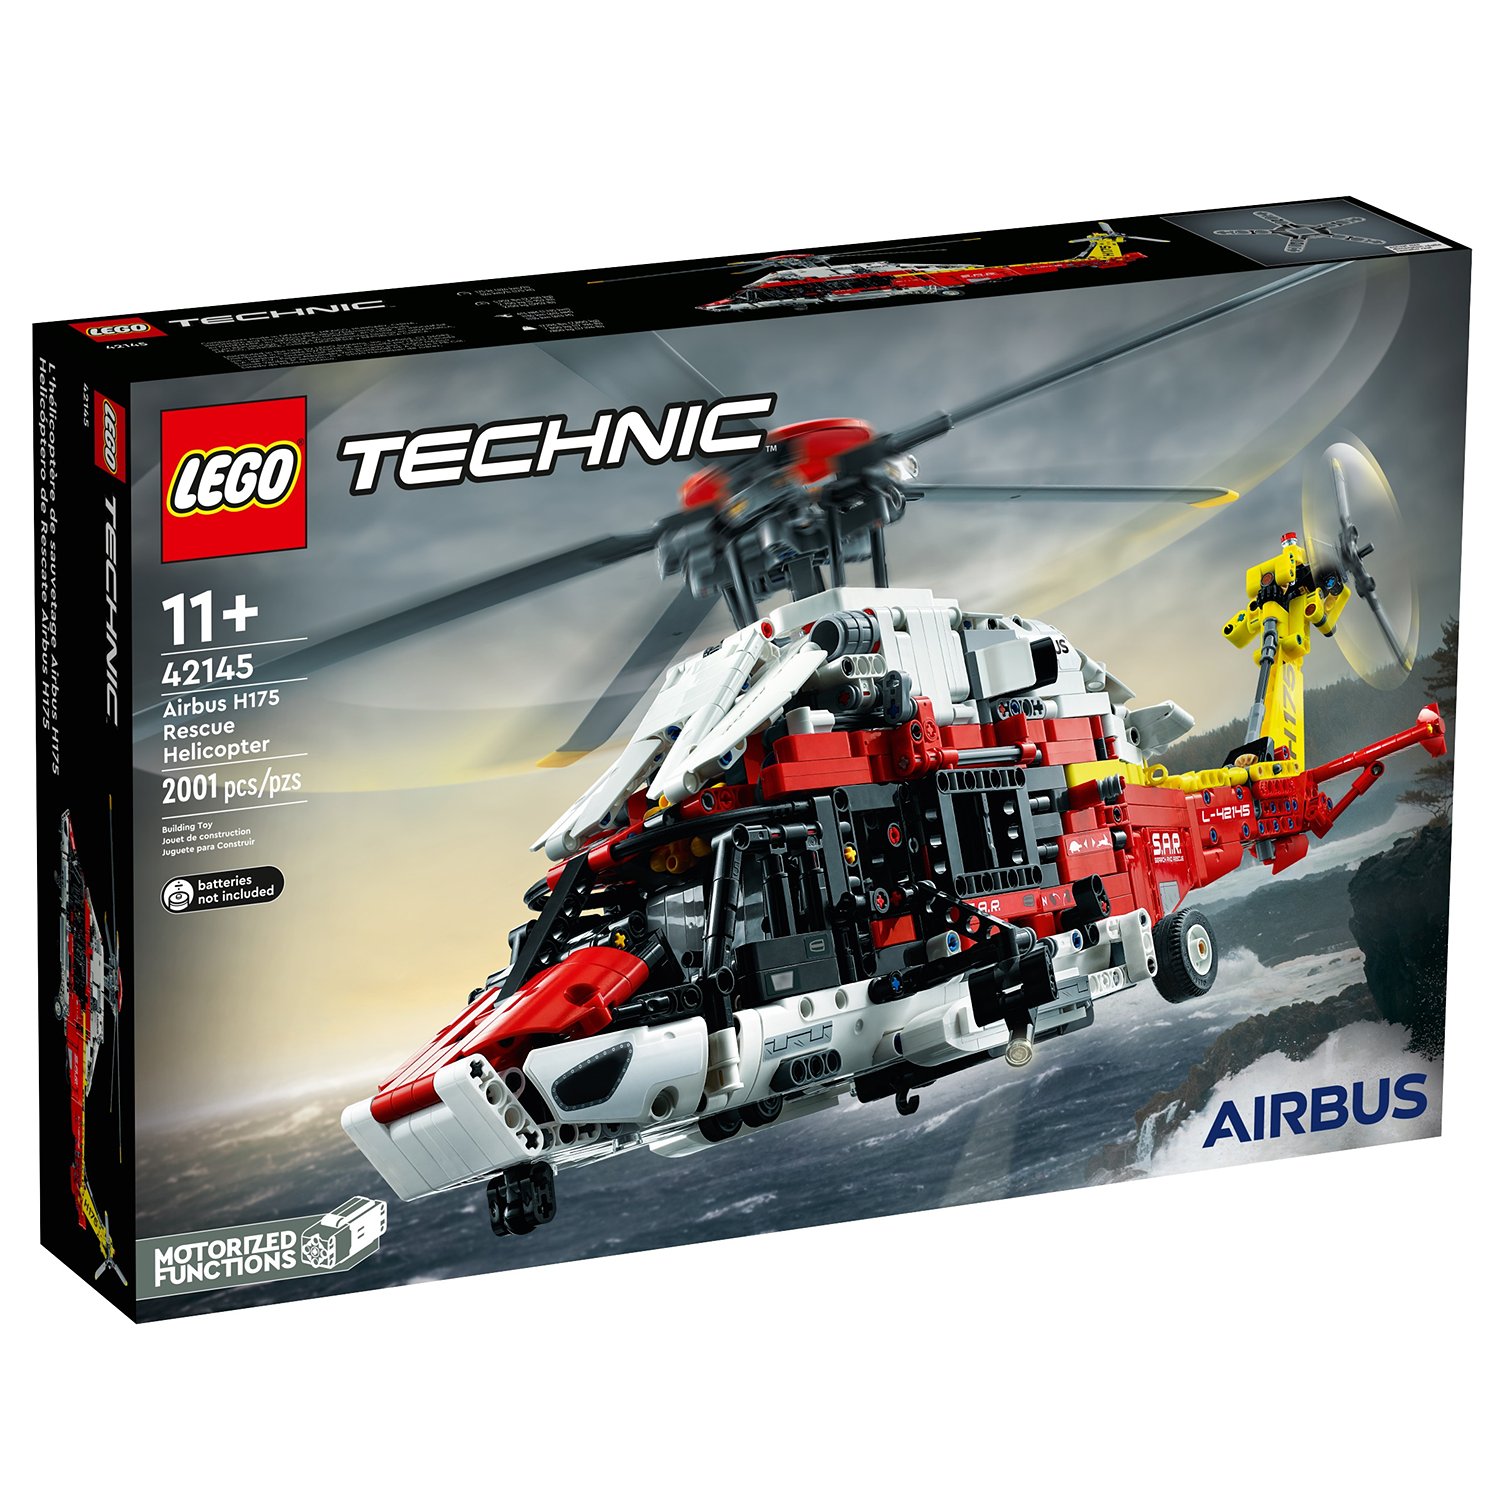 Конструктор LEGO Technic Спасательный вертолет Airbus H175, 2001 деталь, 42145 конструктор lego technic спасательный вертолет airbus h175 42145